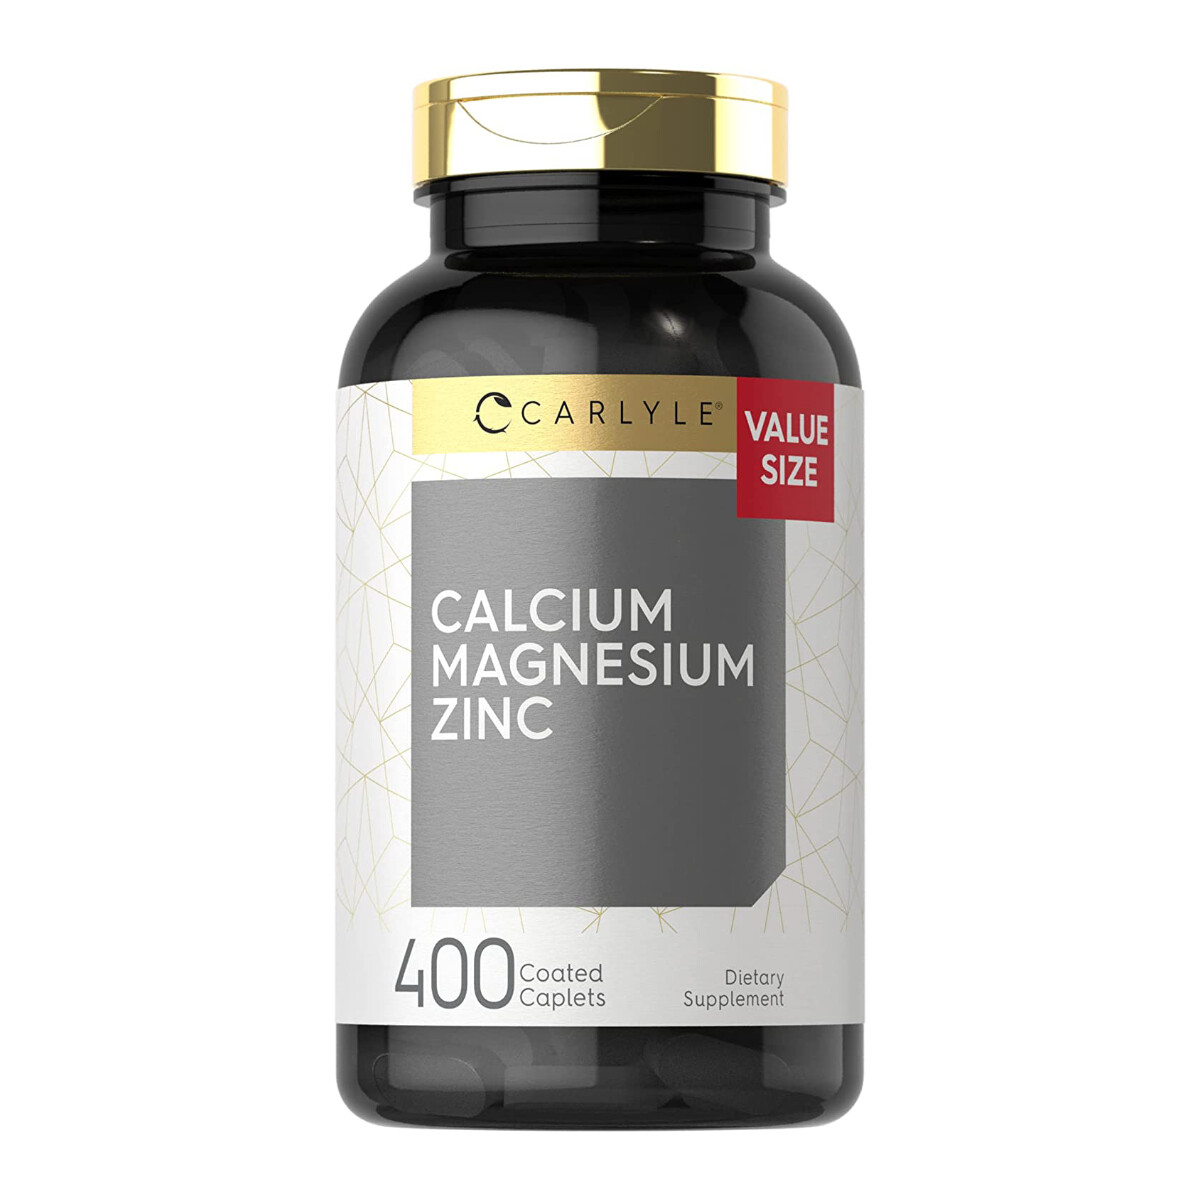 Carlyle Calcium Magnesium Zinc | 400 Caplets Value Size (Z)